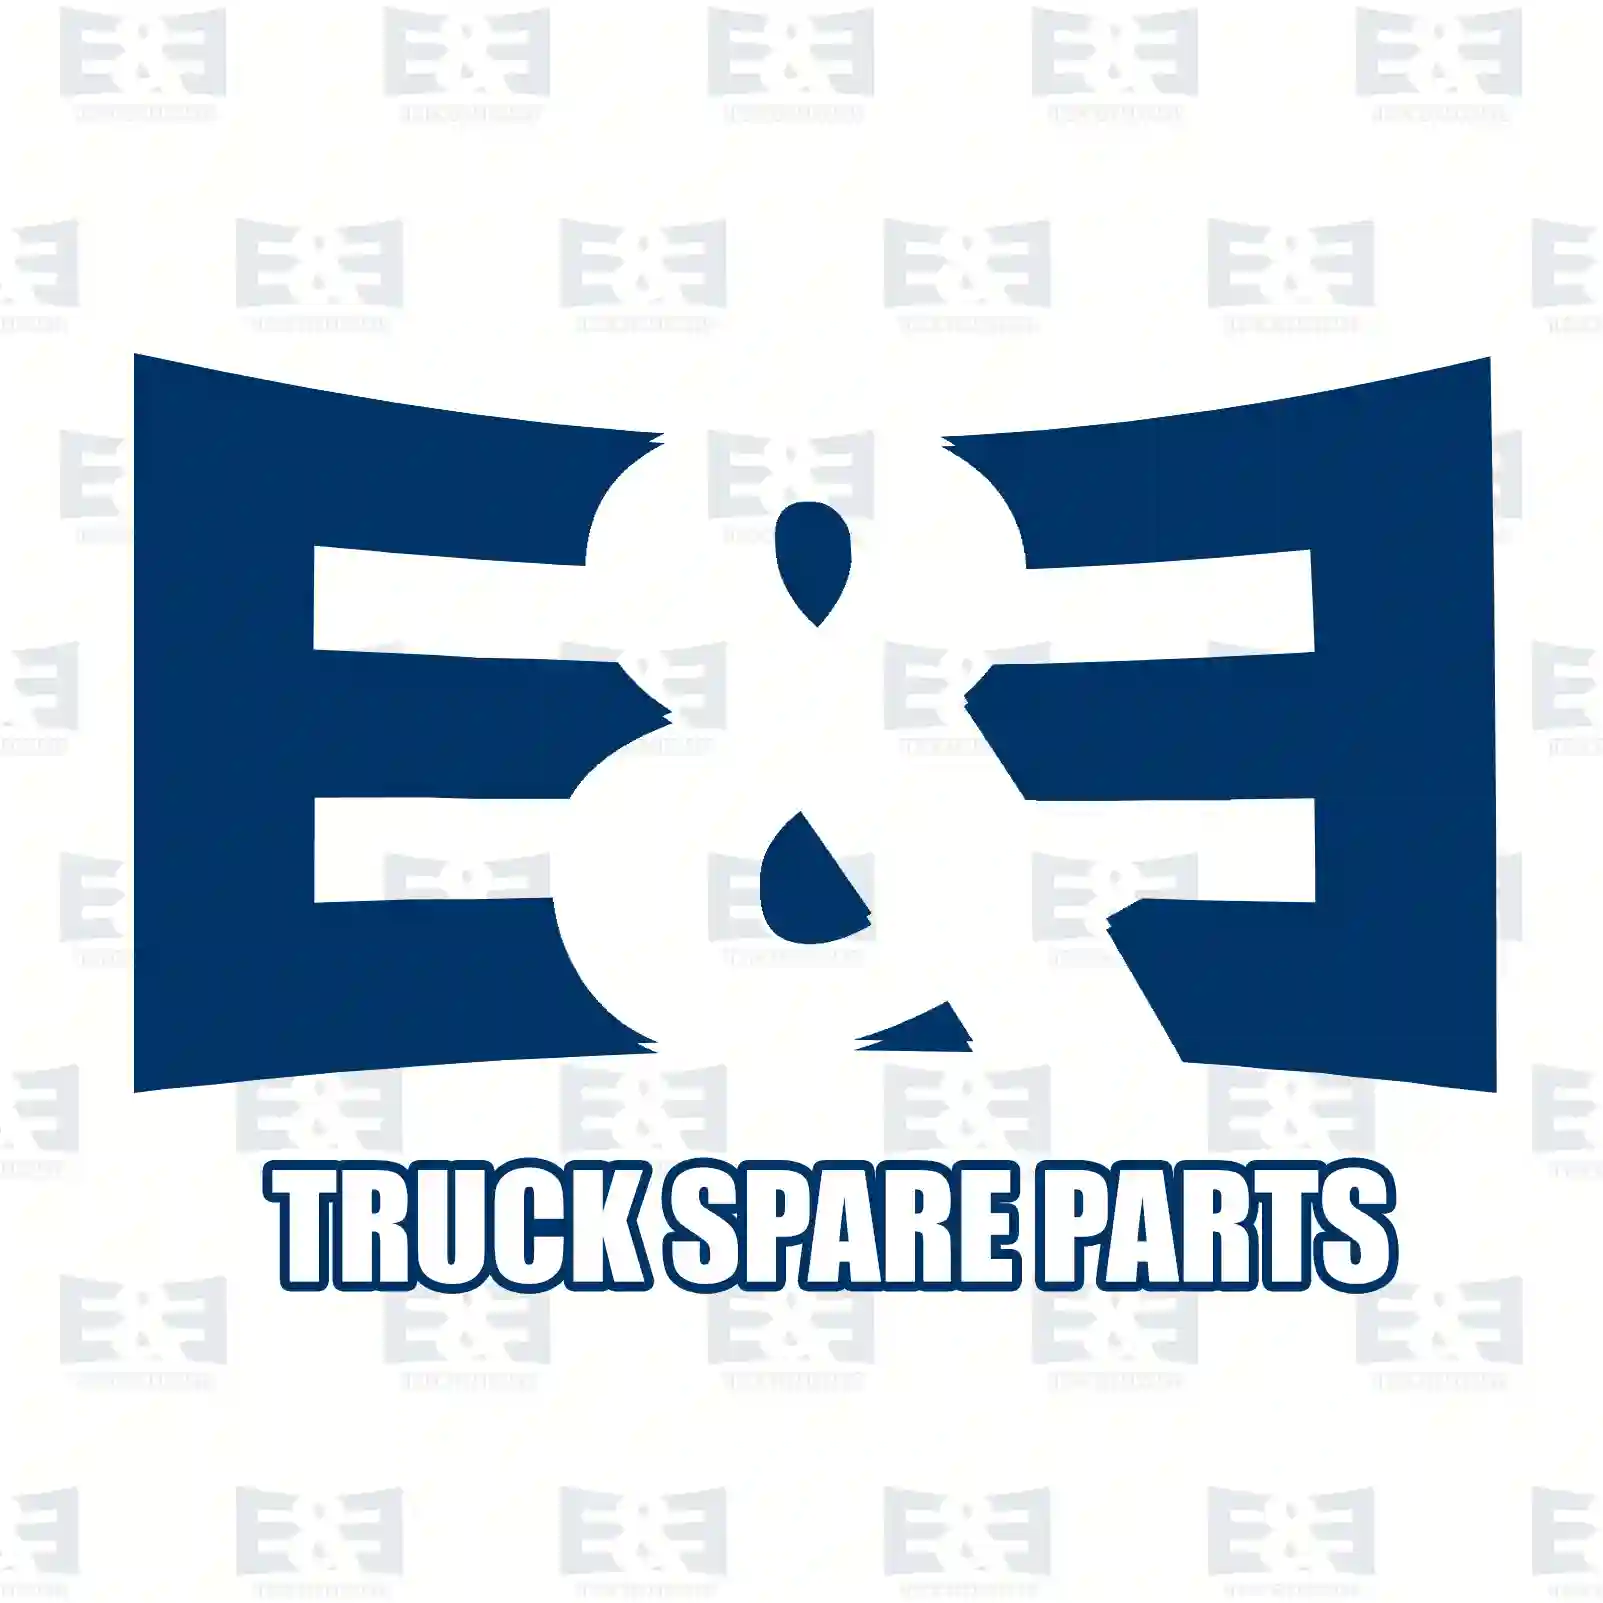 Cover, right, 2E2289296, 2324353 ||  2E2289296 E&E Truck Spare Parts | Truck Spare Parts, Auotomotive Spare Parts Cover, right, 2E2289296, 2324353 ||  2E2289296 E&E Truck Spare Parts | Truck Spare Parts, Auotomotive Spare Parts